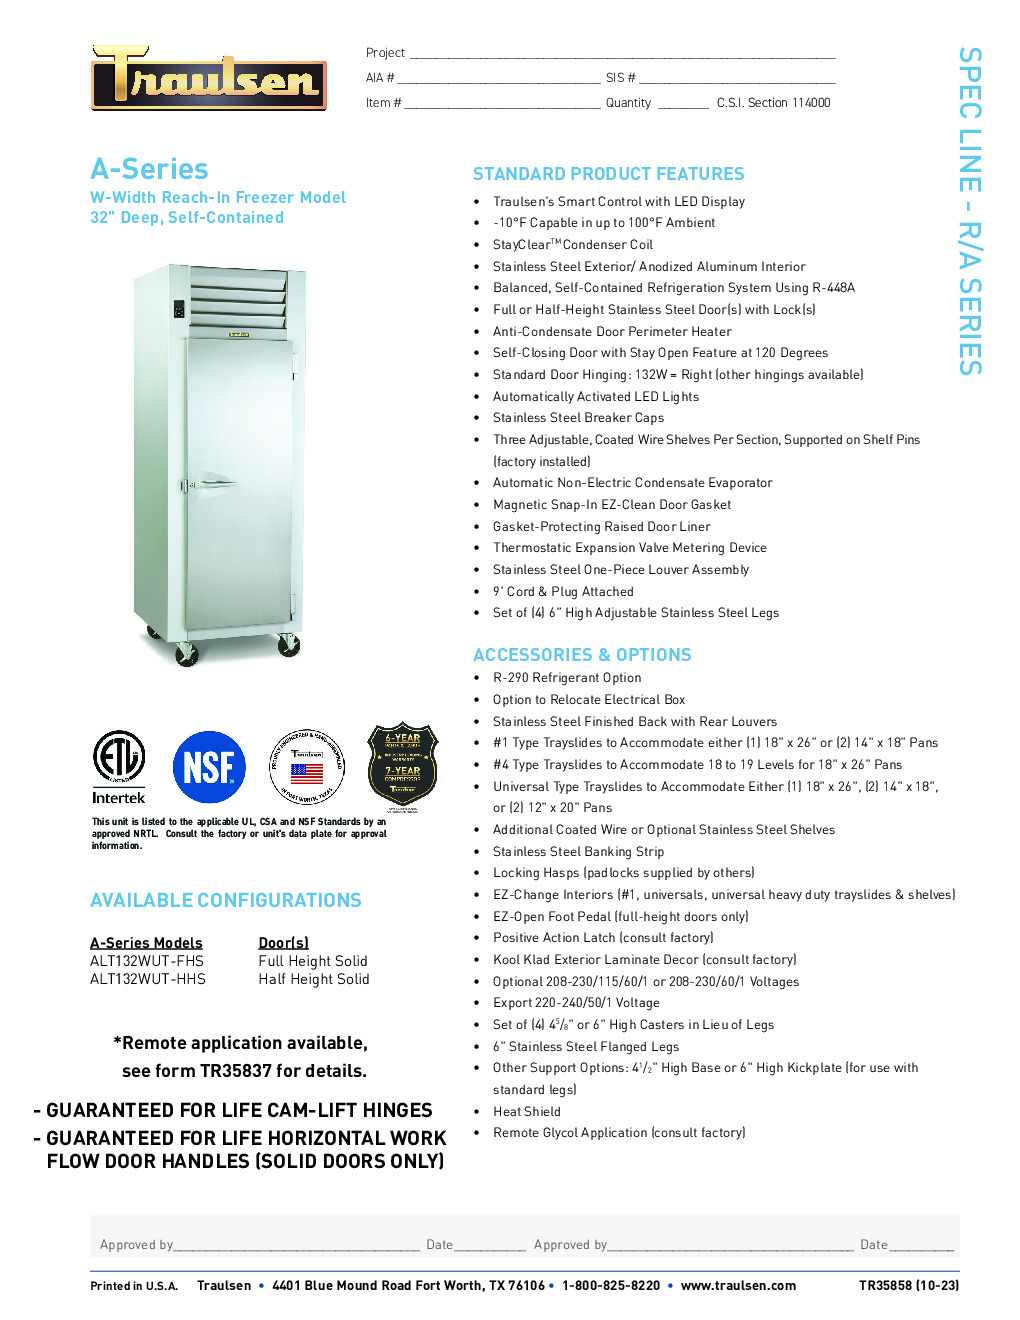 Traulsen ALT132WUT-FHS Reach-In Freezer